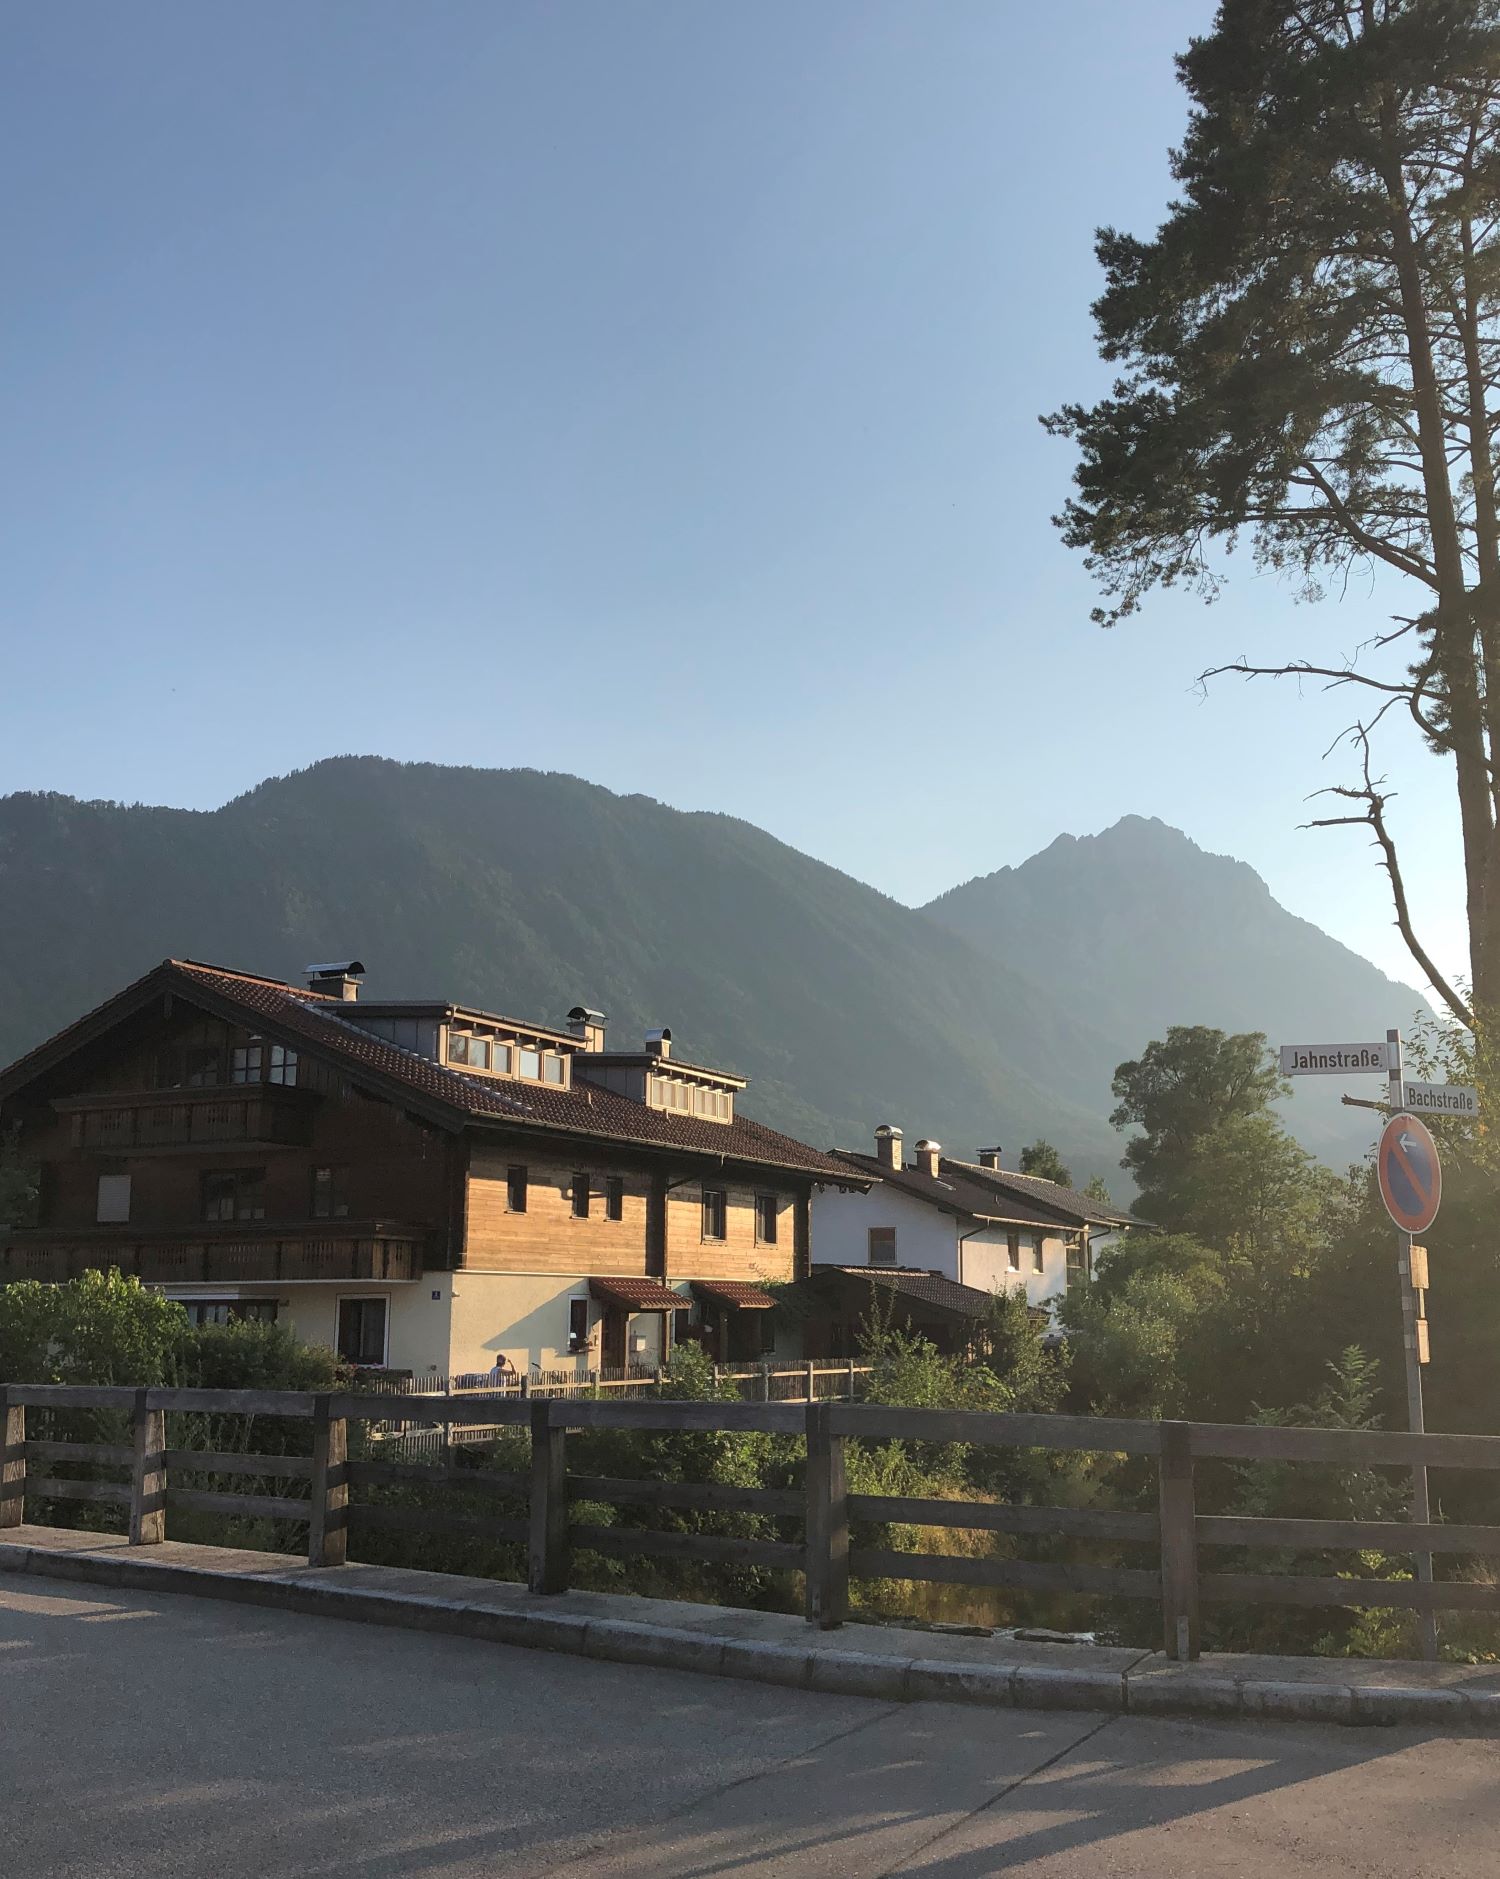 Haus in der Gemeinde Piding im oberbayerischen Landkreis Berchtesgadener Land